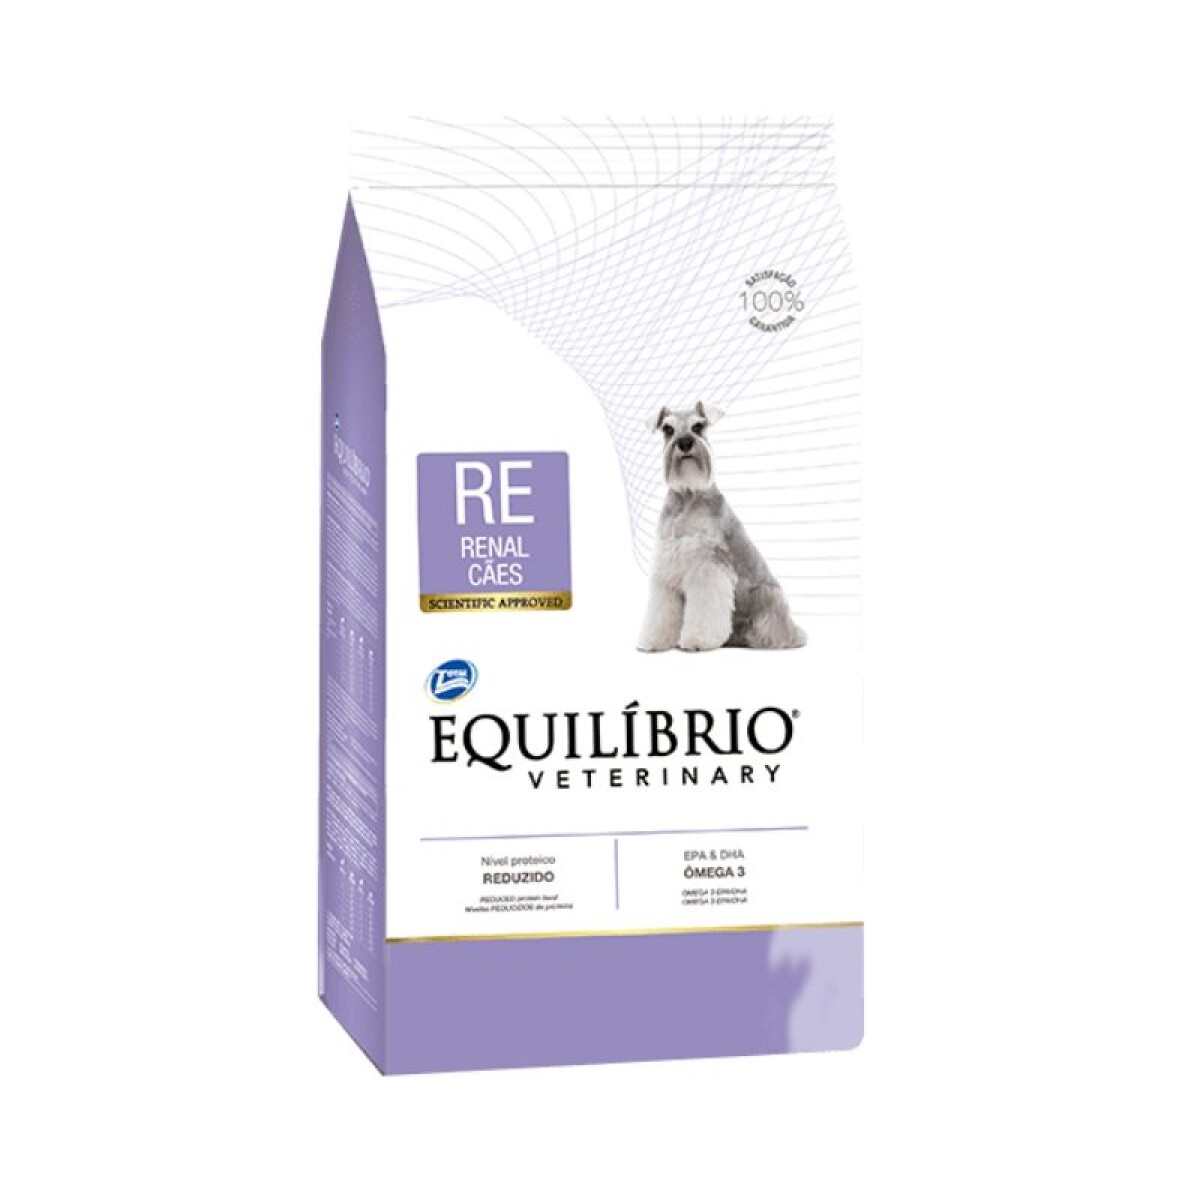 EQUILIBRIO RENAL DOG 7.5KG - Equilibrio Renal Dog 7.5kg 